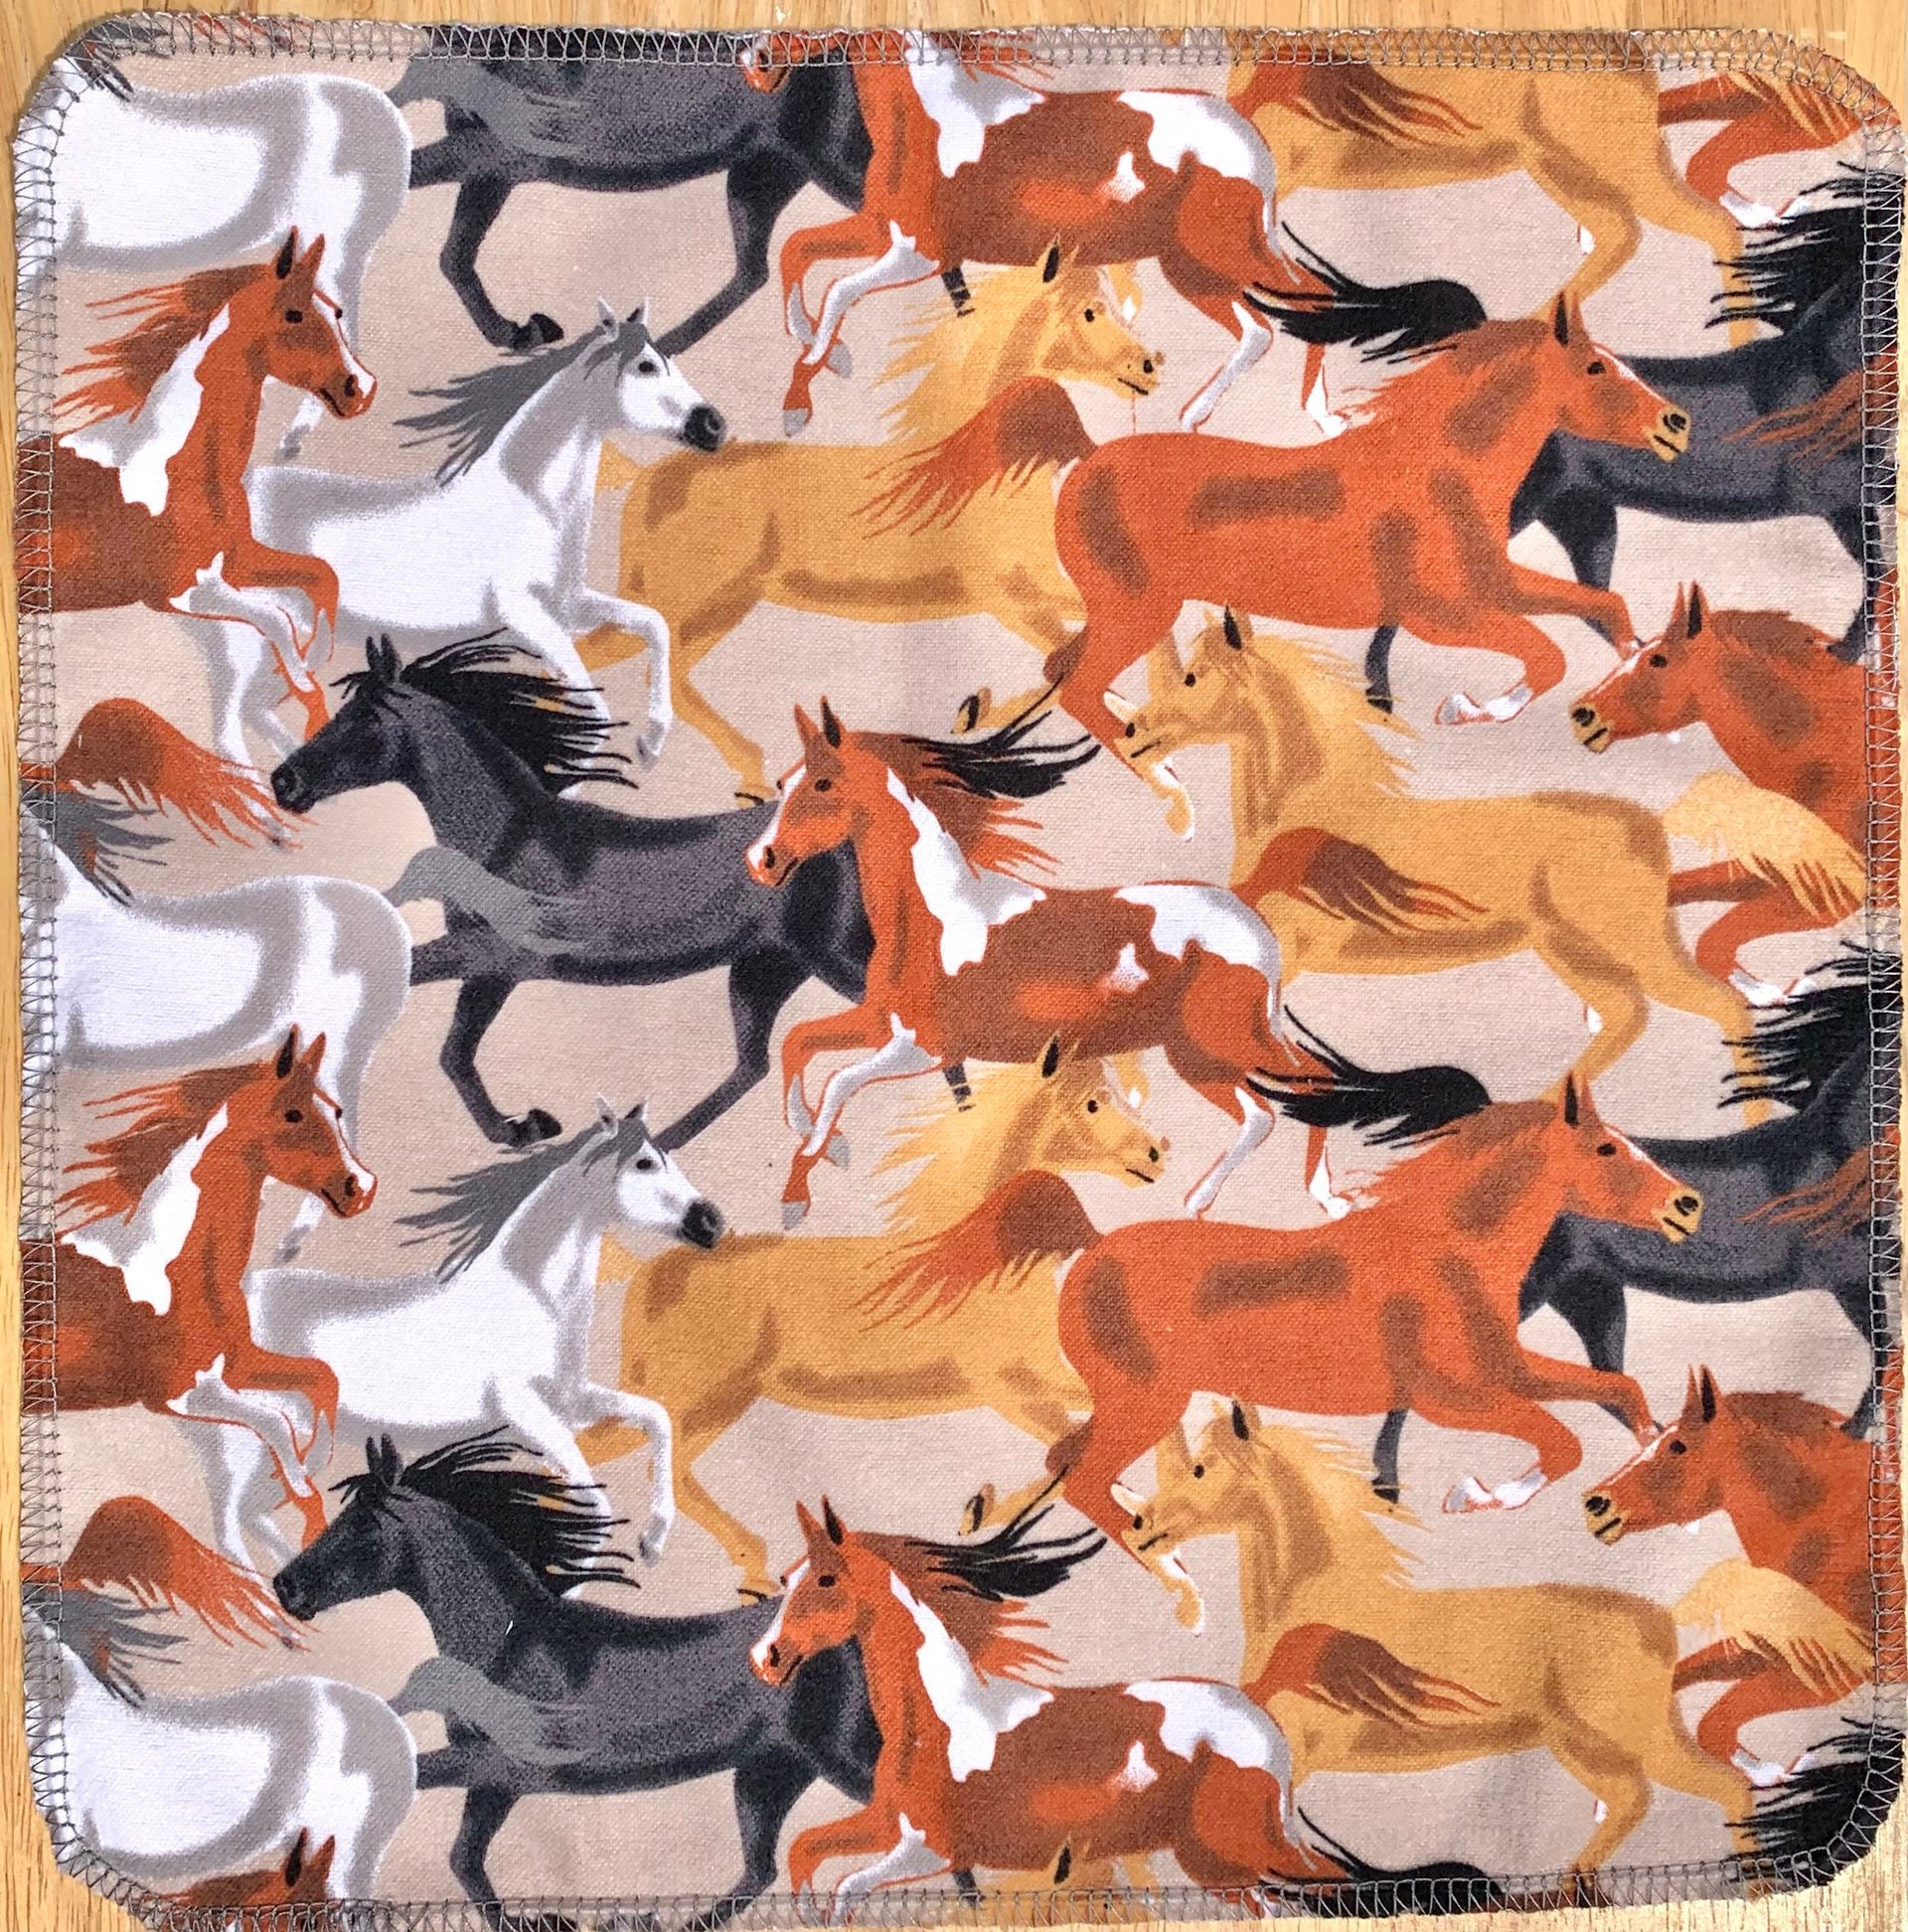 Wild Horses Paperless Towels || Unpaper Towels || Zero-Waste Kitchen